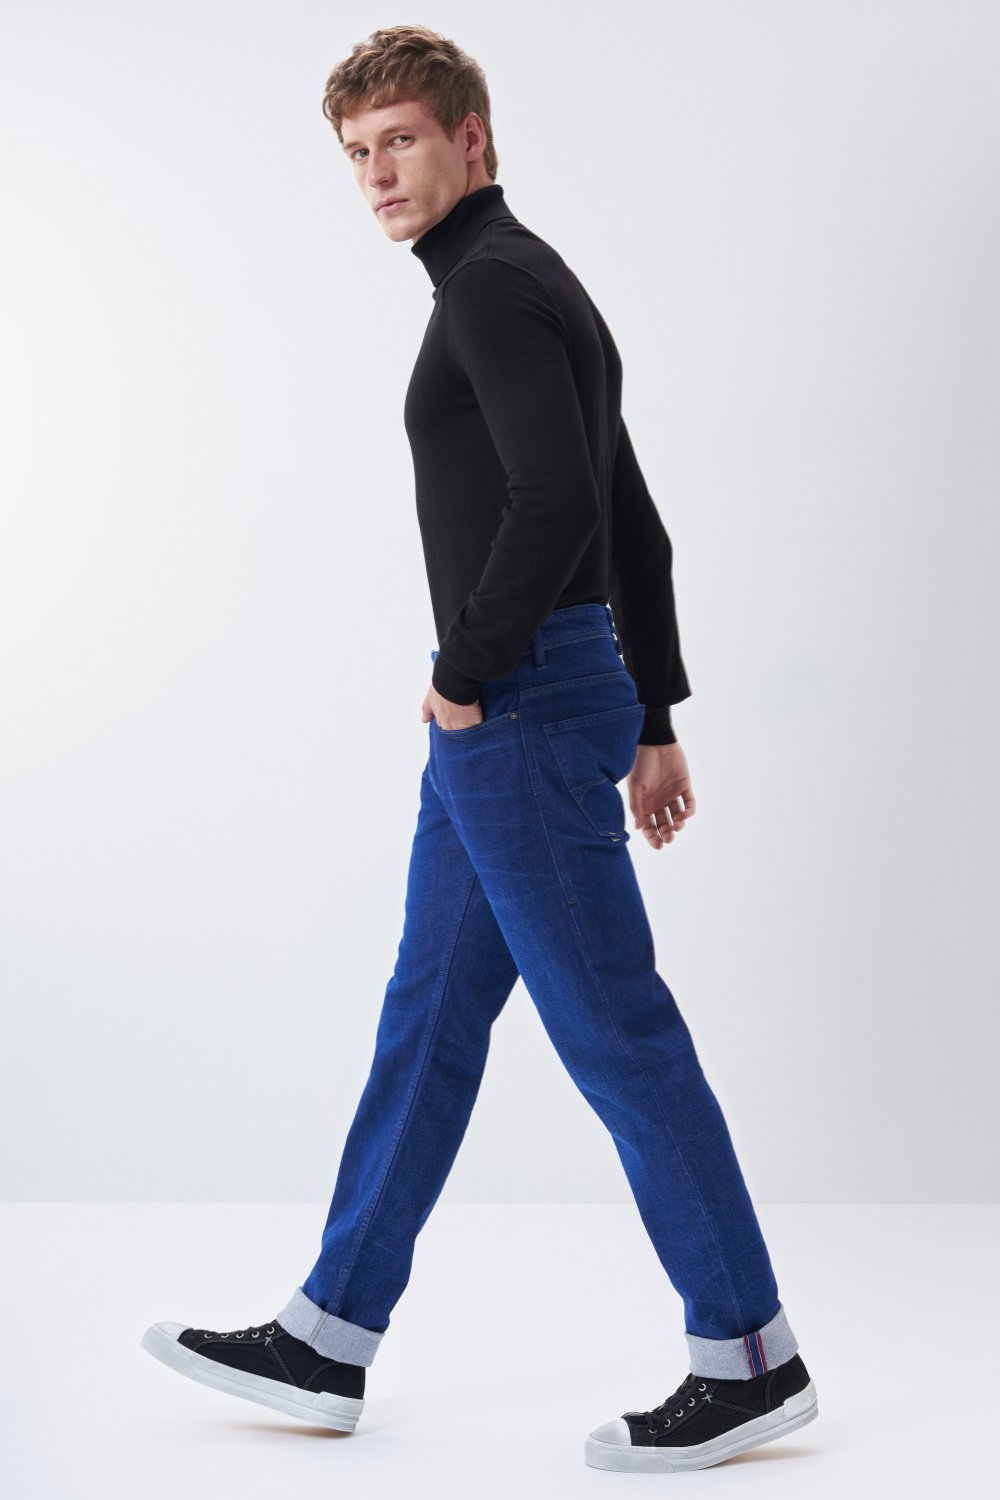 Regular slim jeans, bright blue, washed - Salsa